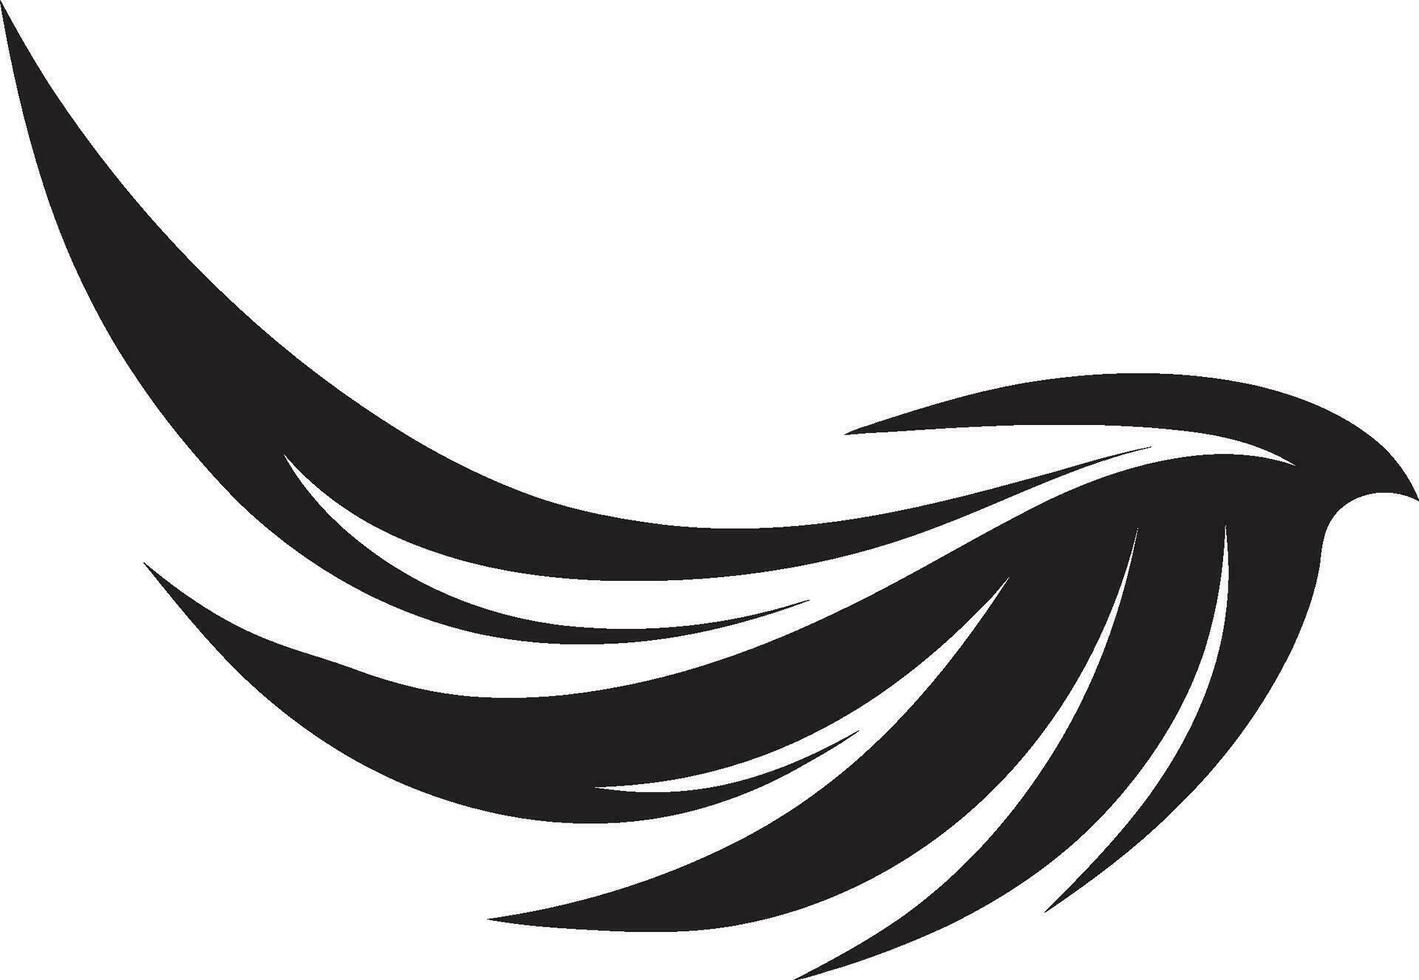 semplicistico eleganza nel nero e bianca emblematico icona emblema di spiriti serenità angelo Ali logo design vettore